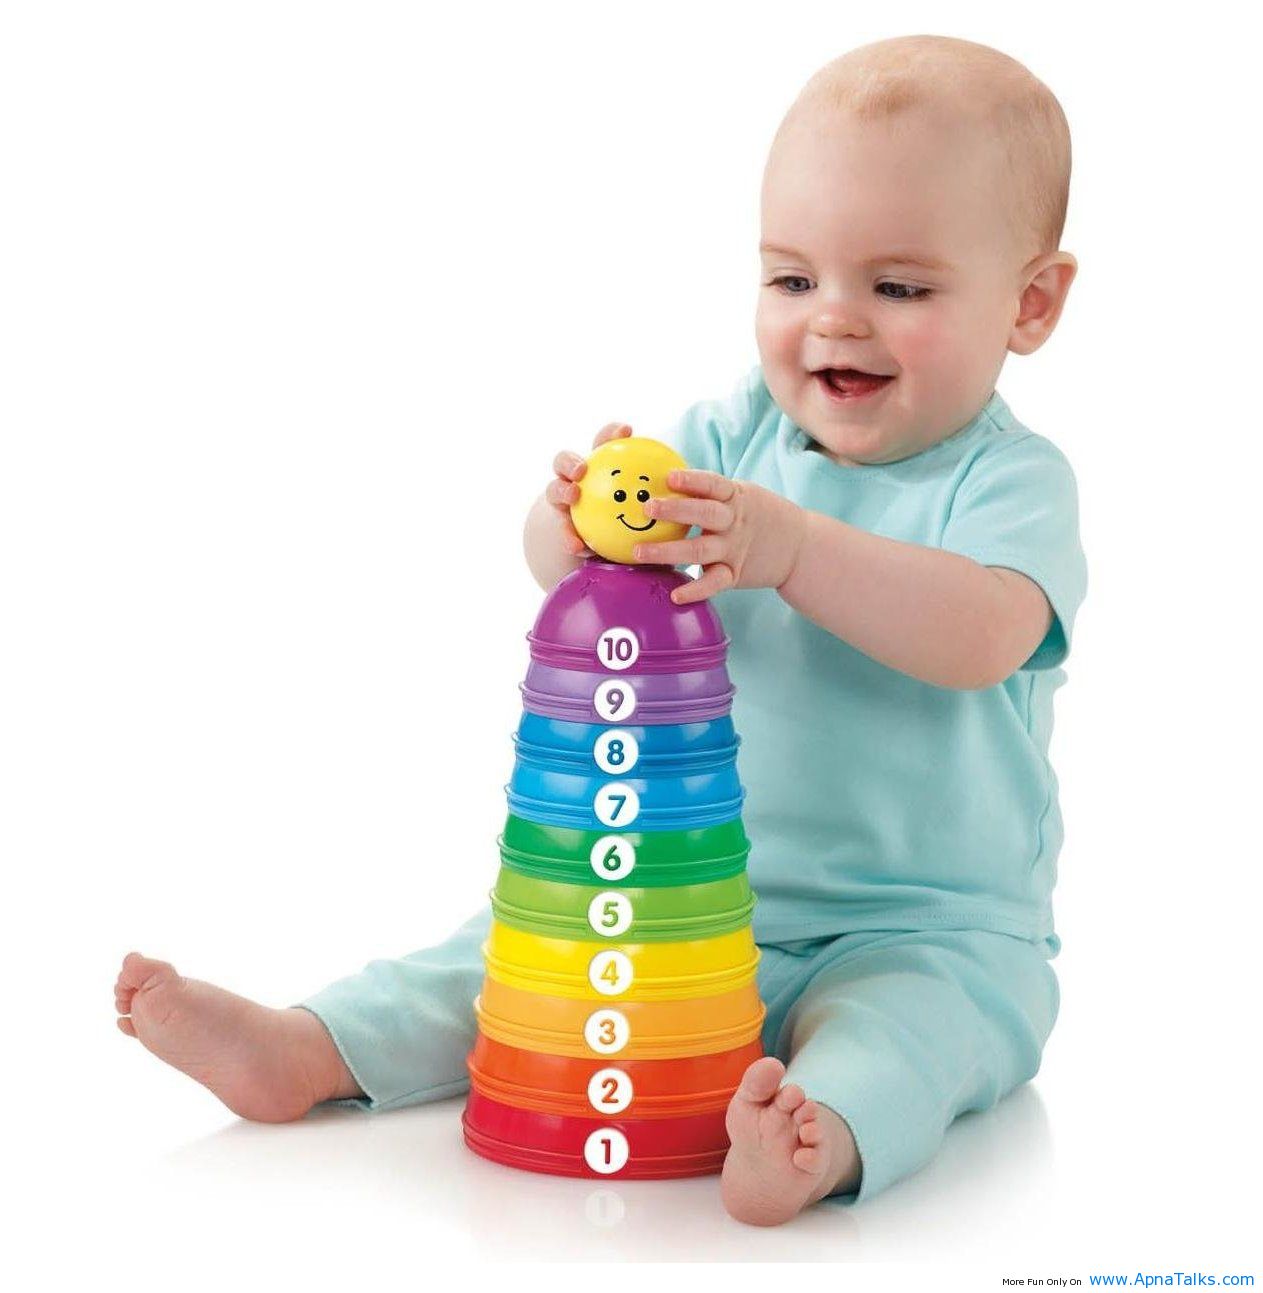 Игры для детей в 6 месяцев: какие нужны ребенку для правильного развития?